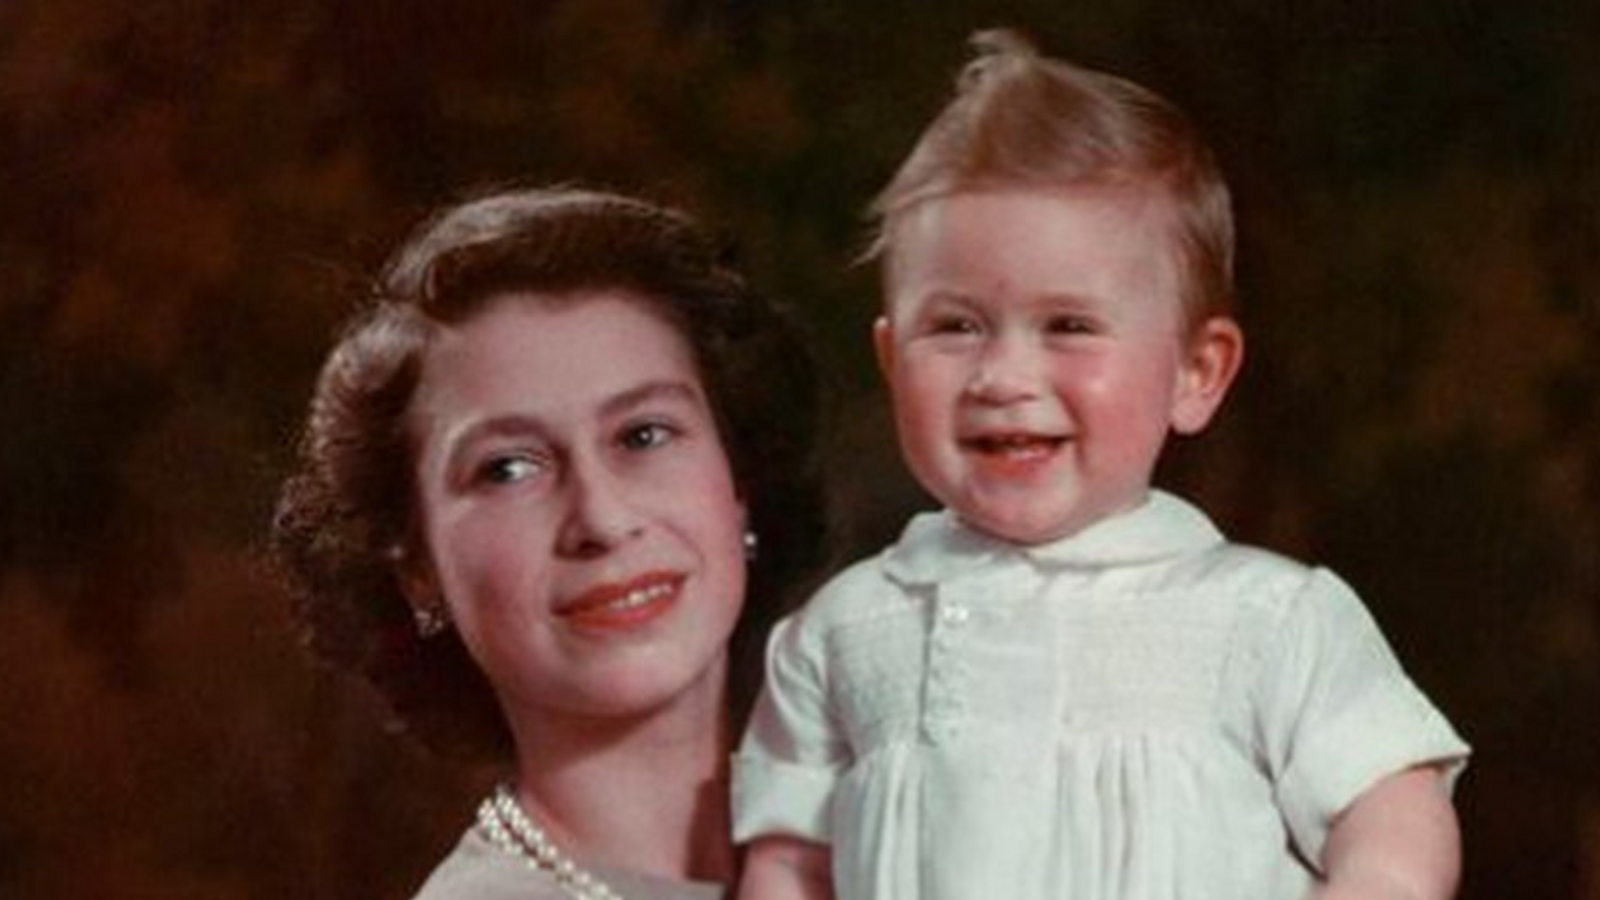 الملك تارلز الثالث (الطفل) في حضن الملكة الوالدة الراحلة 